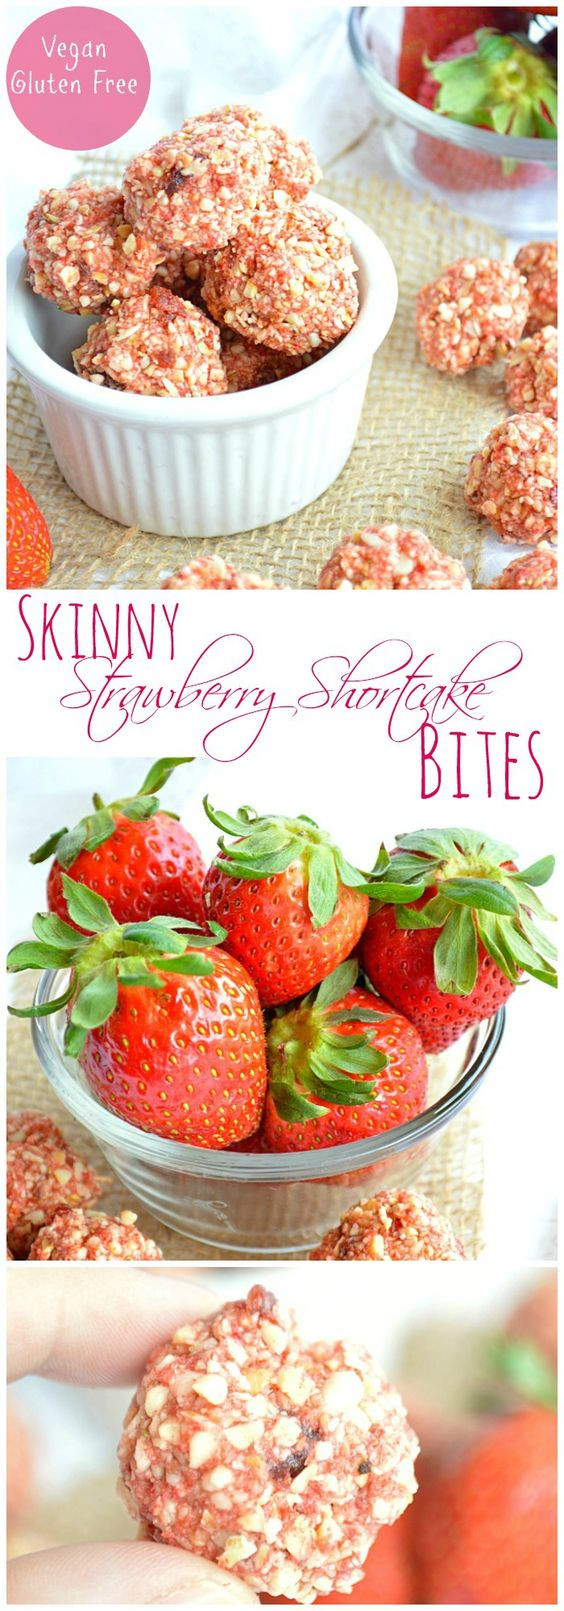 Tasty Healthy Snacks
 Skinny Strawberry Shortcake Bites Recipe